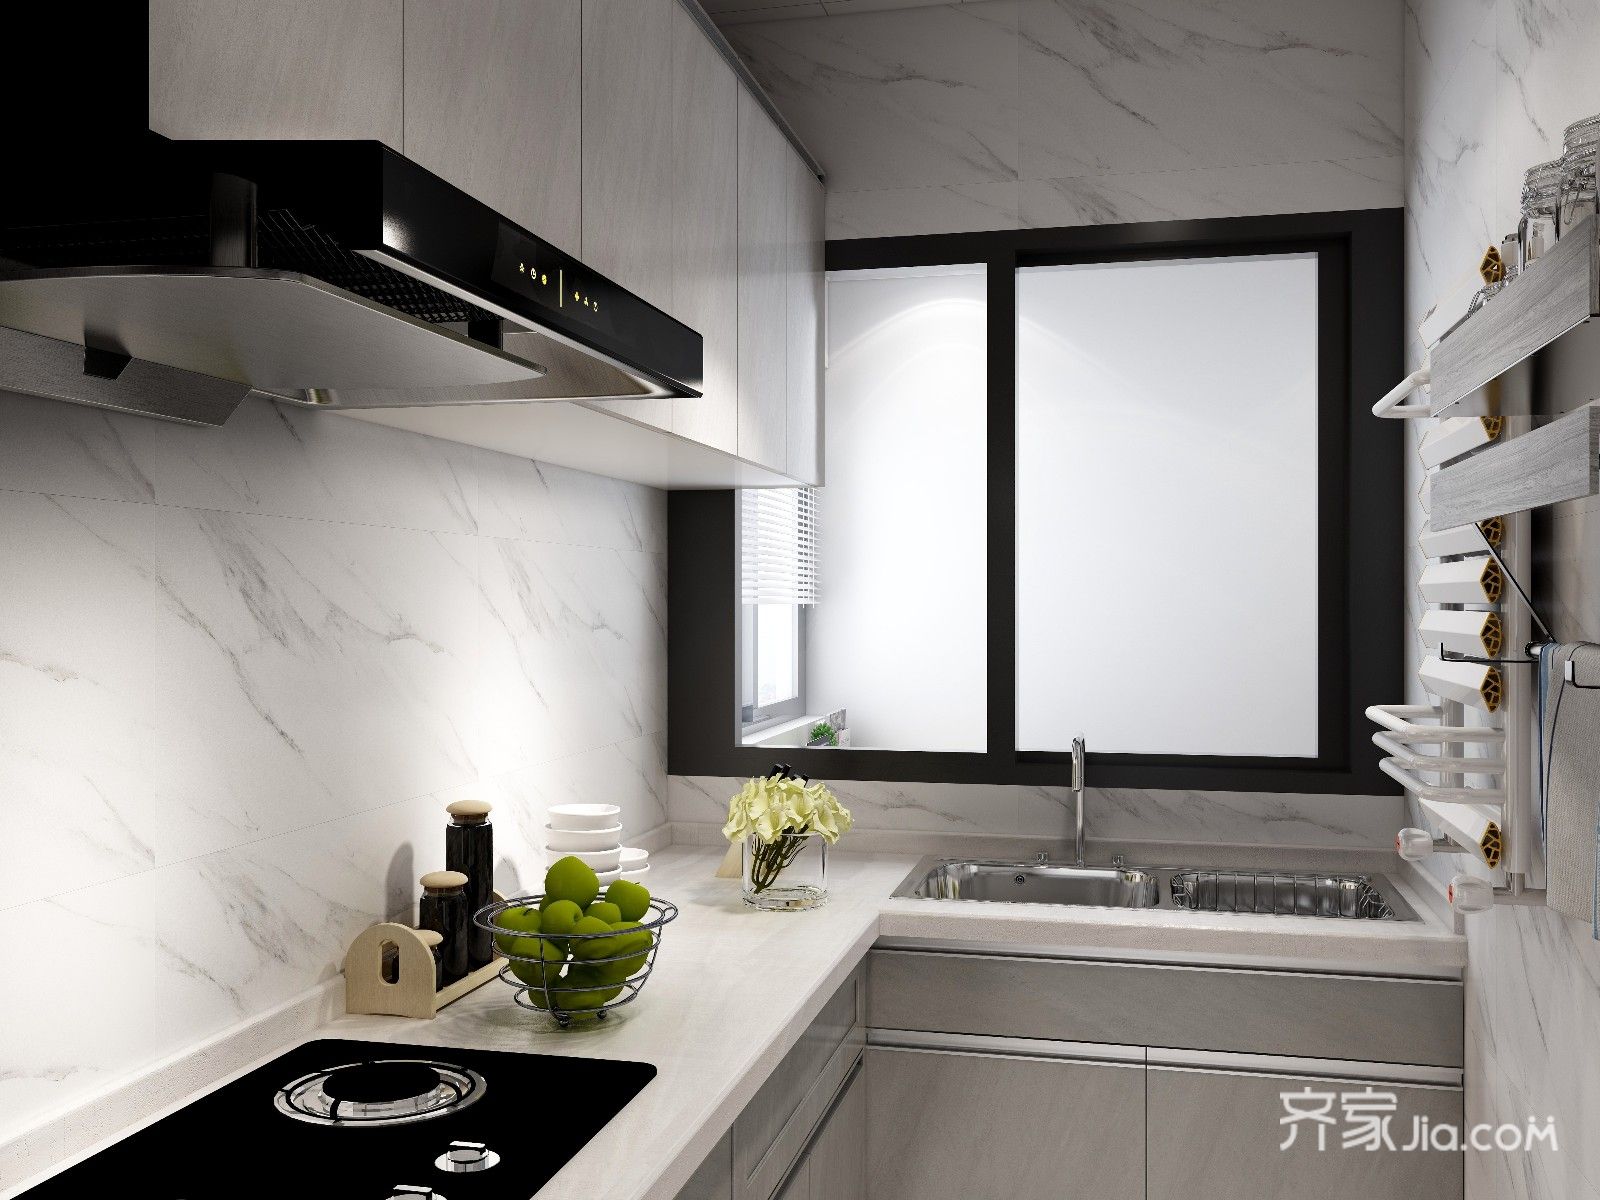 厨房大面积用干净的爵士白图案瓷砖搭配同色系橱柜,整体干净整洁